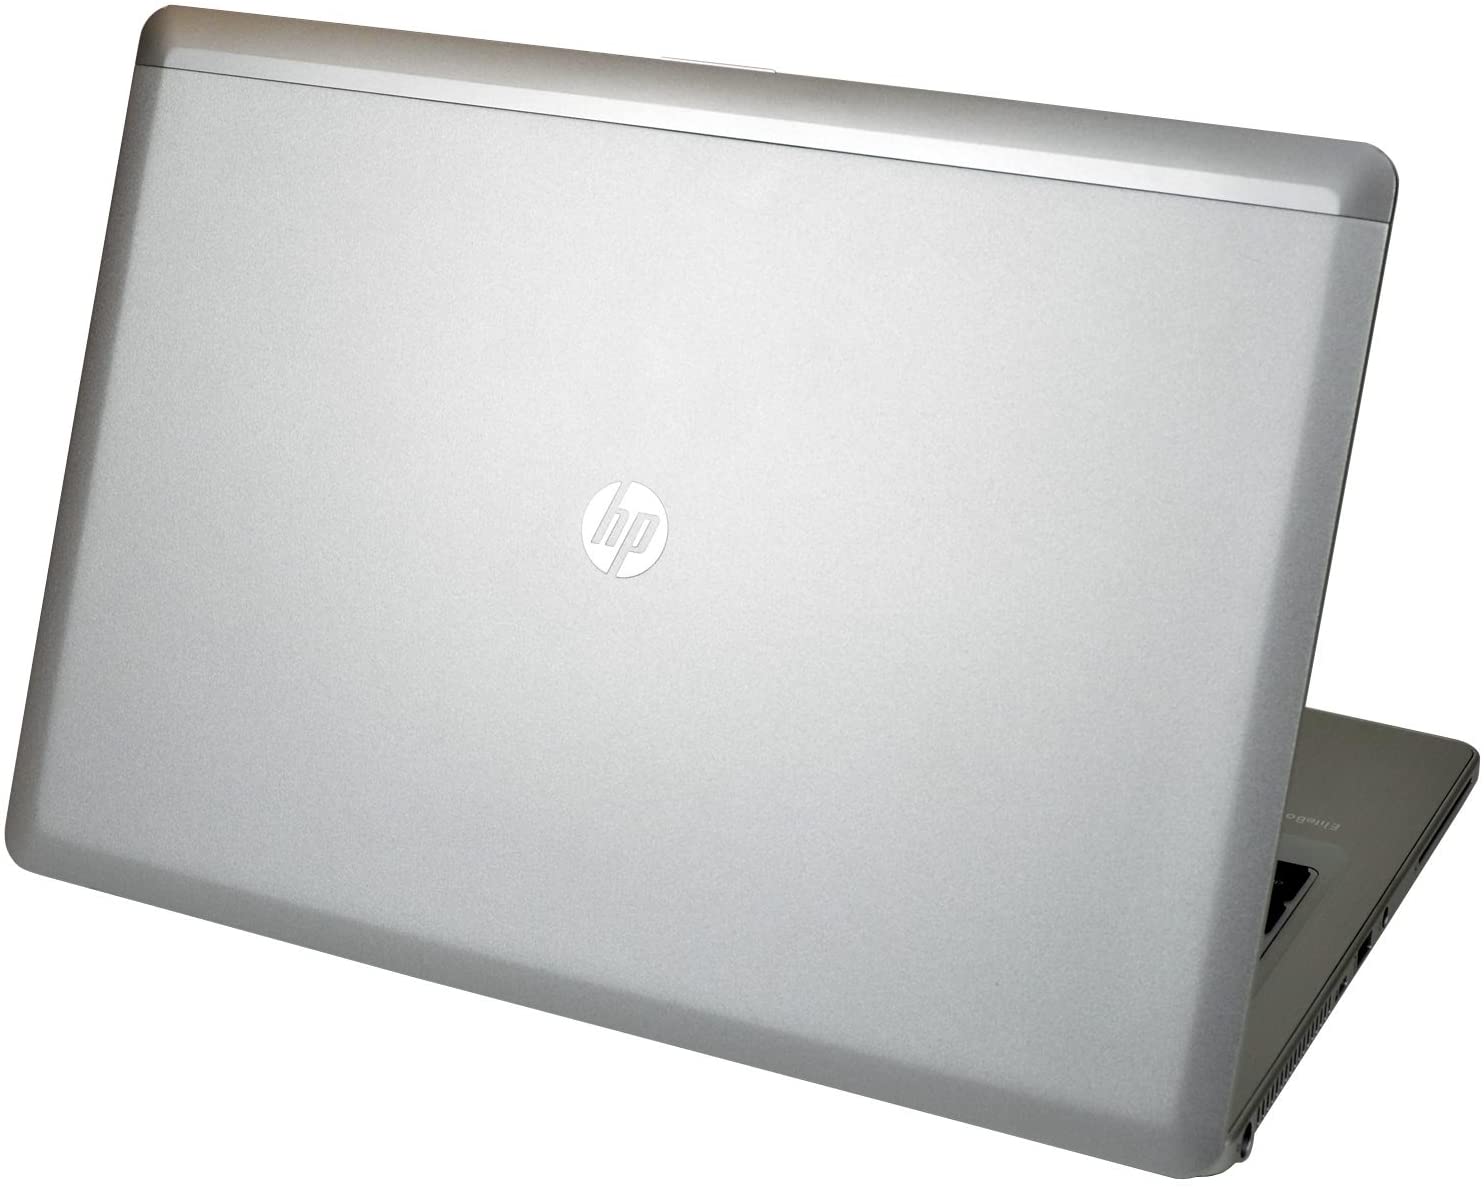 EPower HP EliteBook Folio 9480M 14 Inches Windows 10 Pro 64bit 4th Gen Laptop (Renewed)